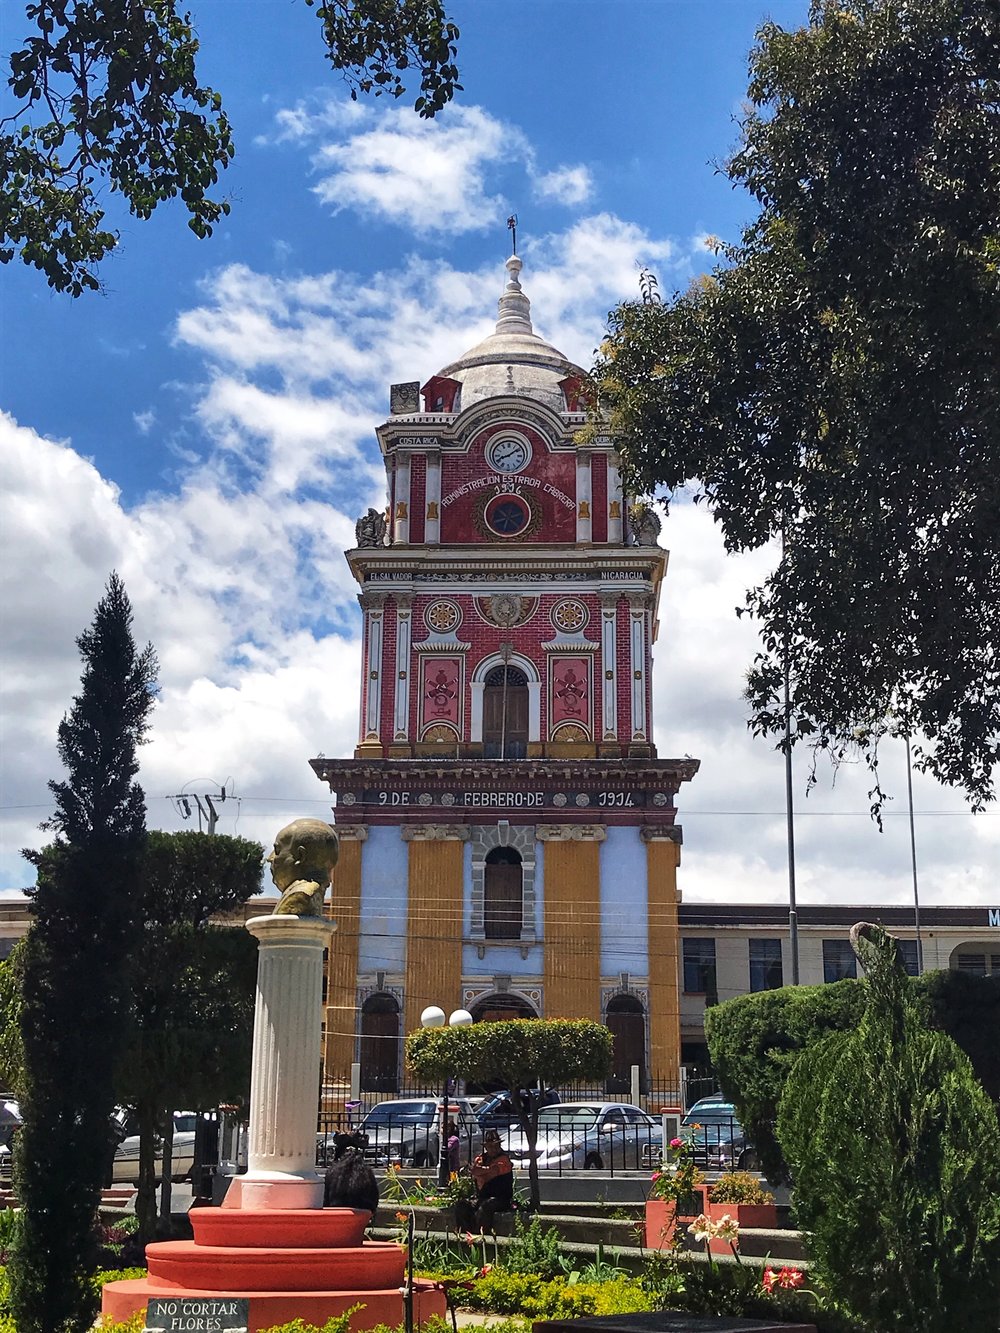 Centenario tower in Solola's central square